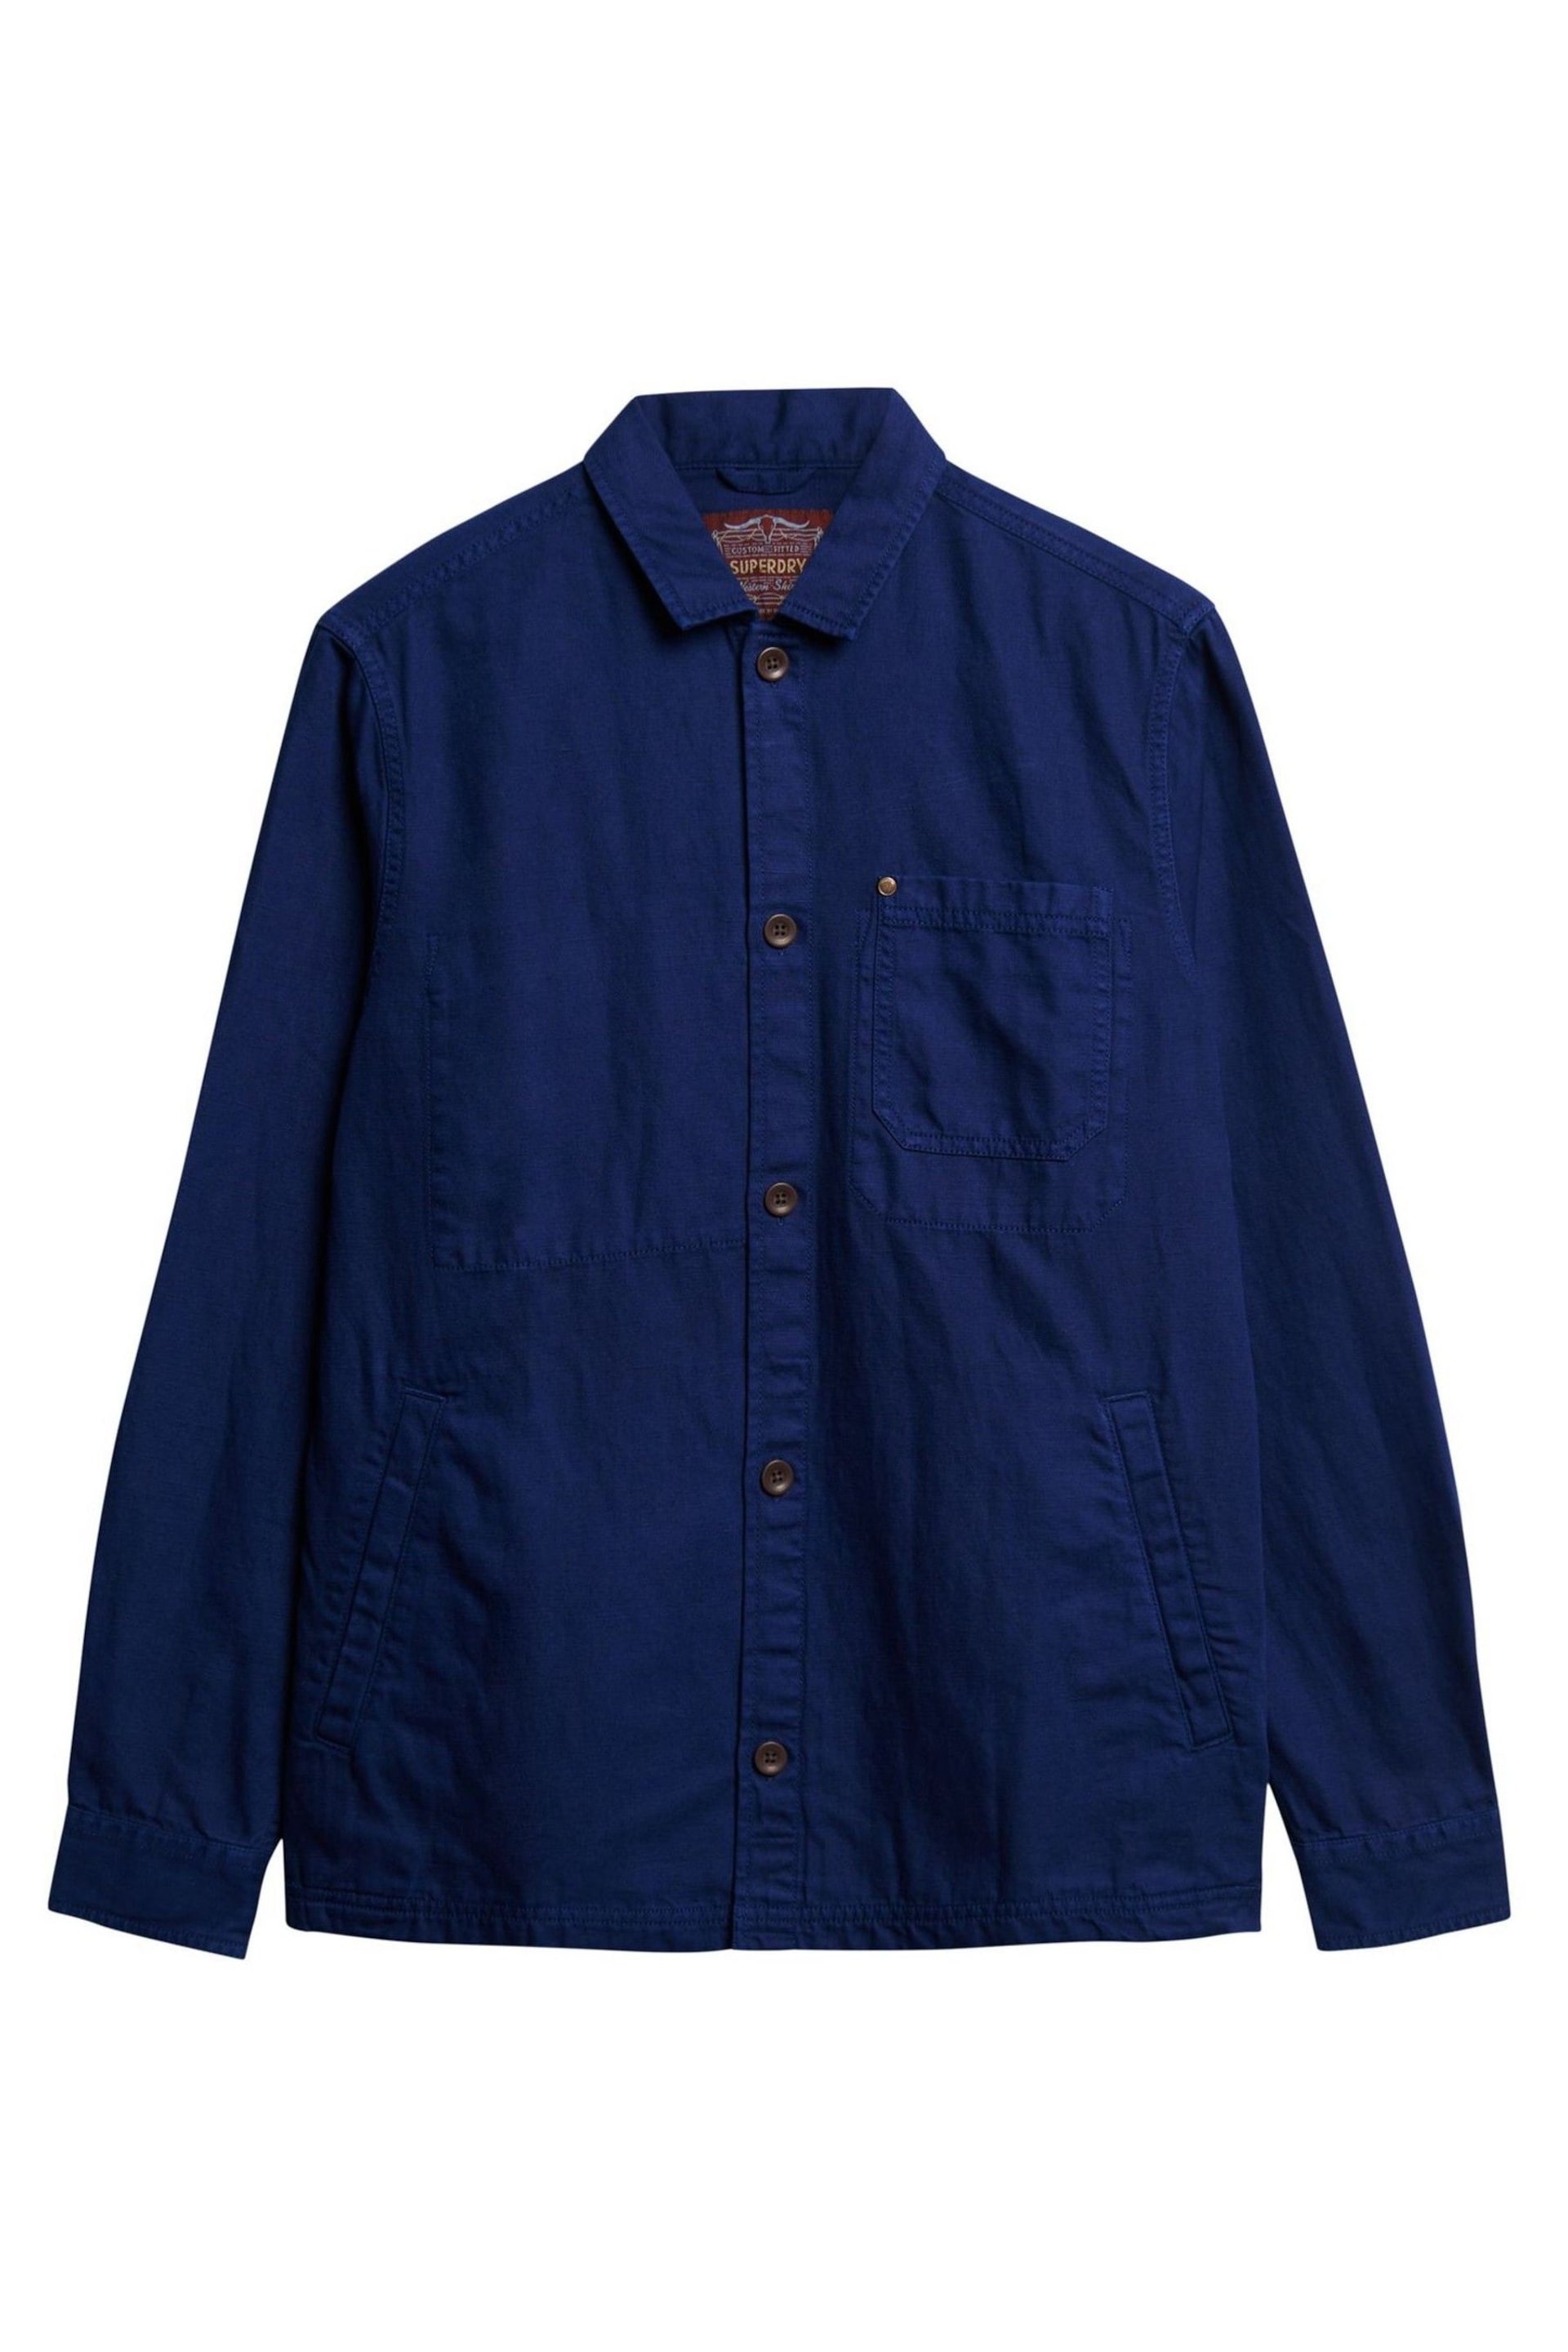 Superdry Blue Merchant Linen Blend Overshirt - Image 4 of 4